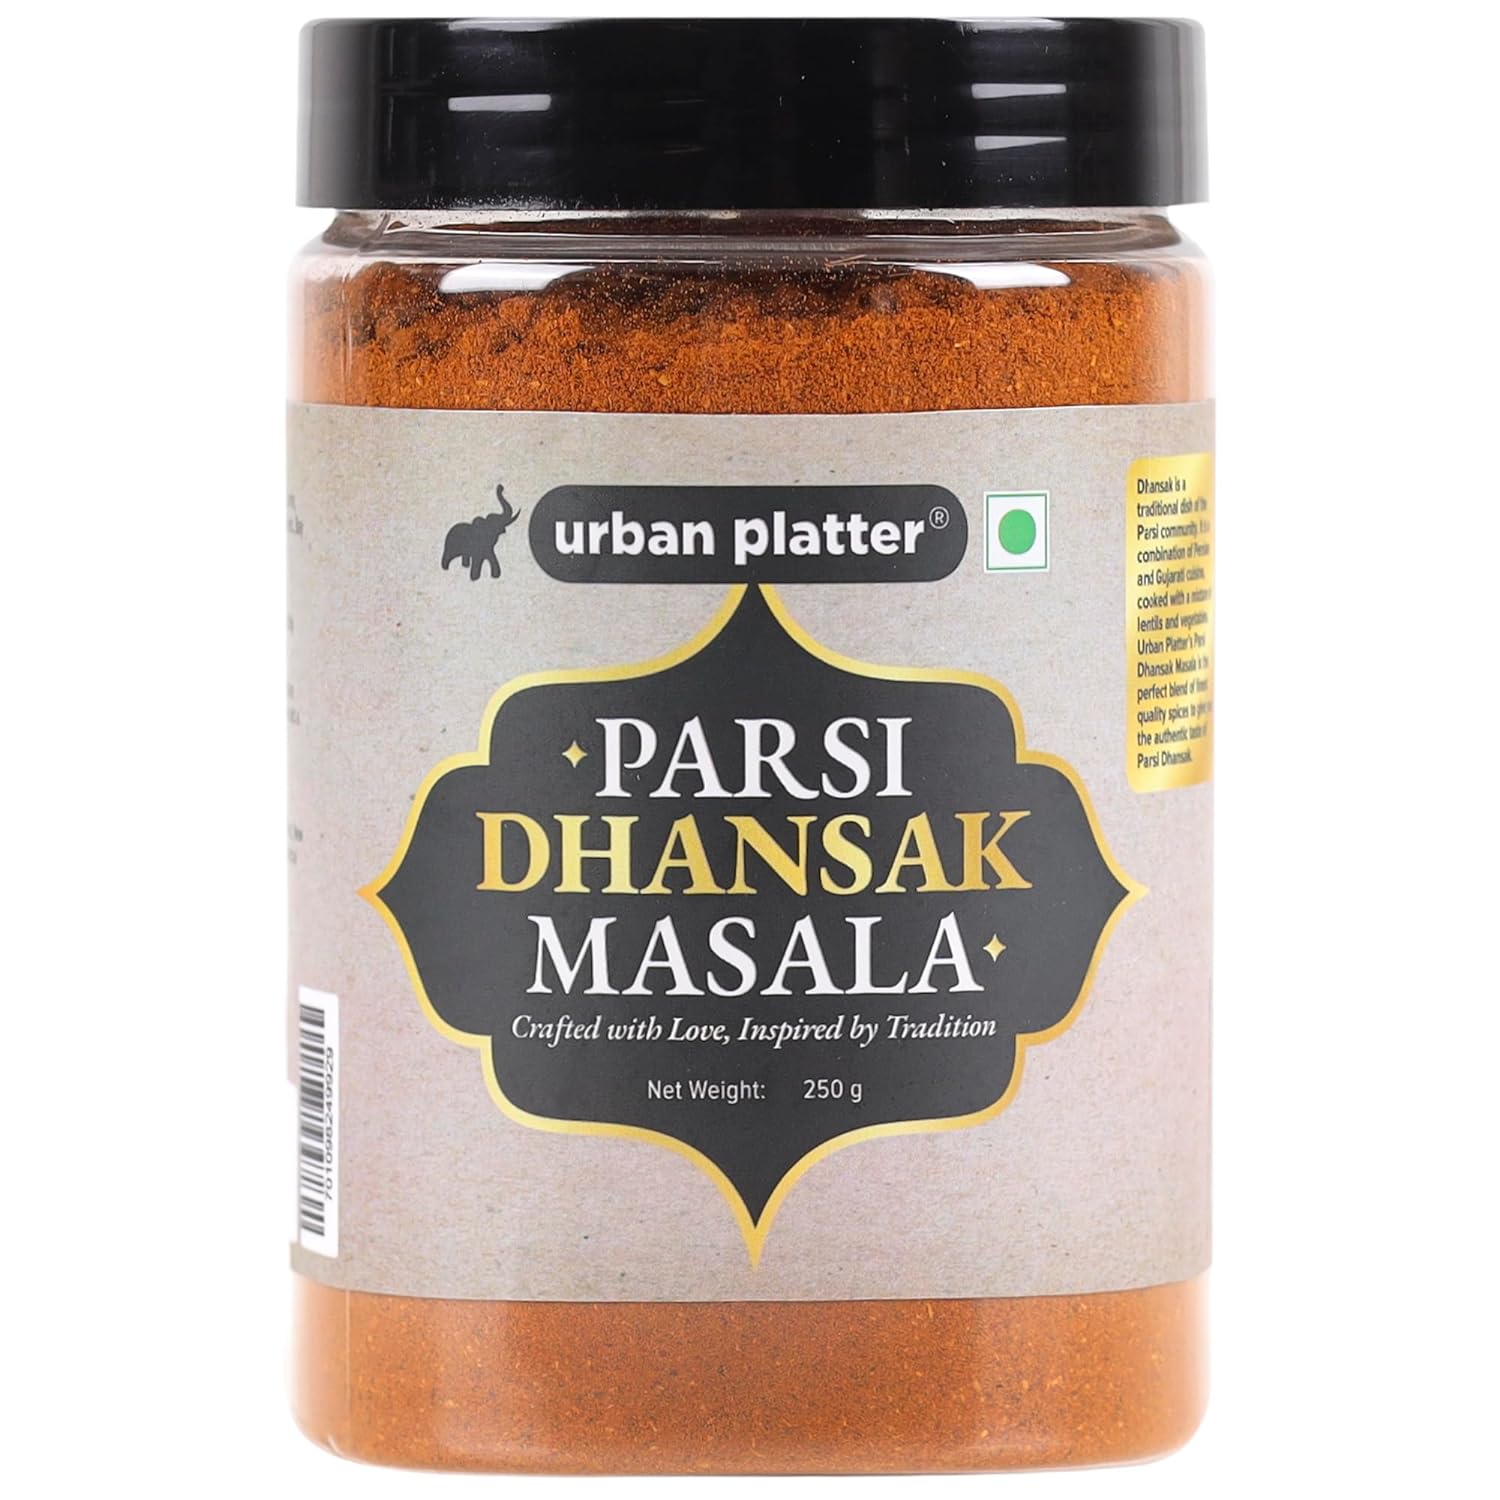 Urban Platter Parsi Dhansak Masala, 250g / 8.8oz